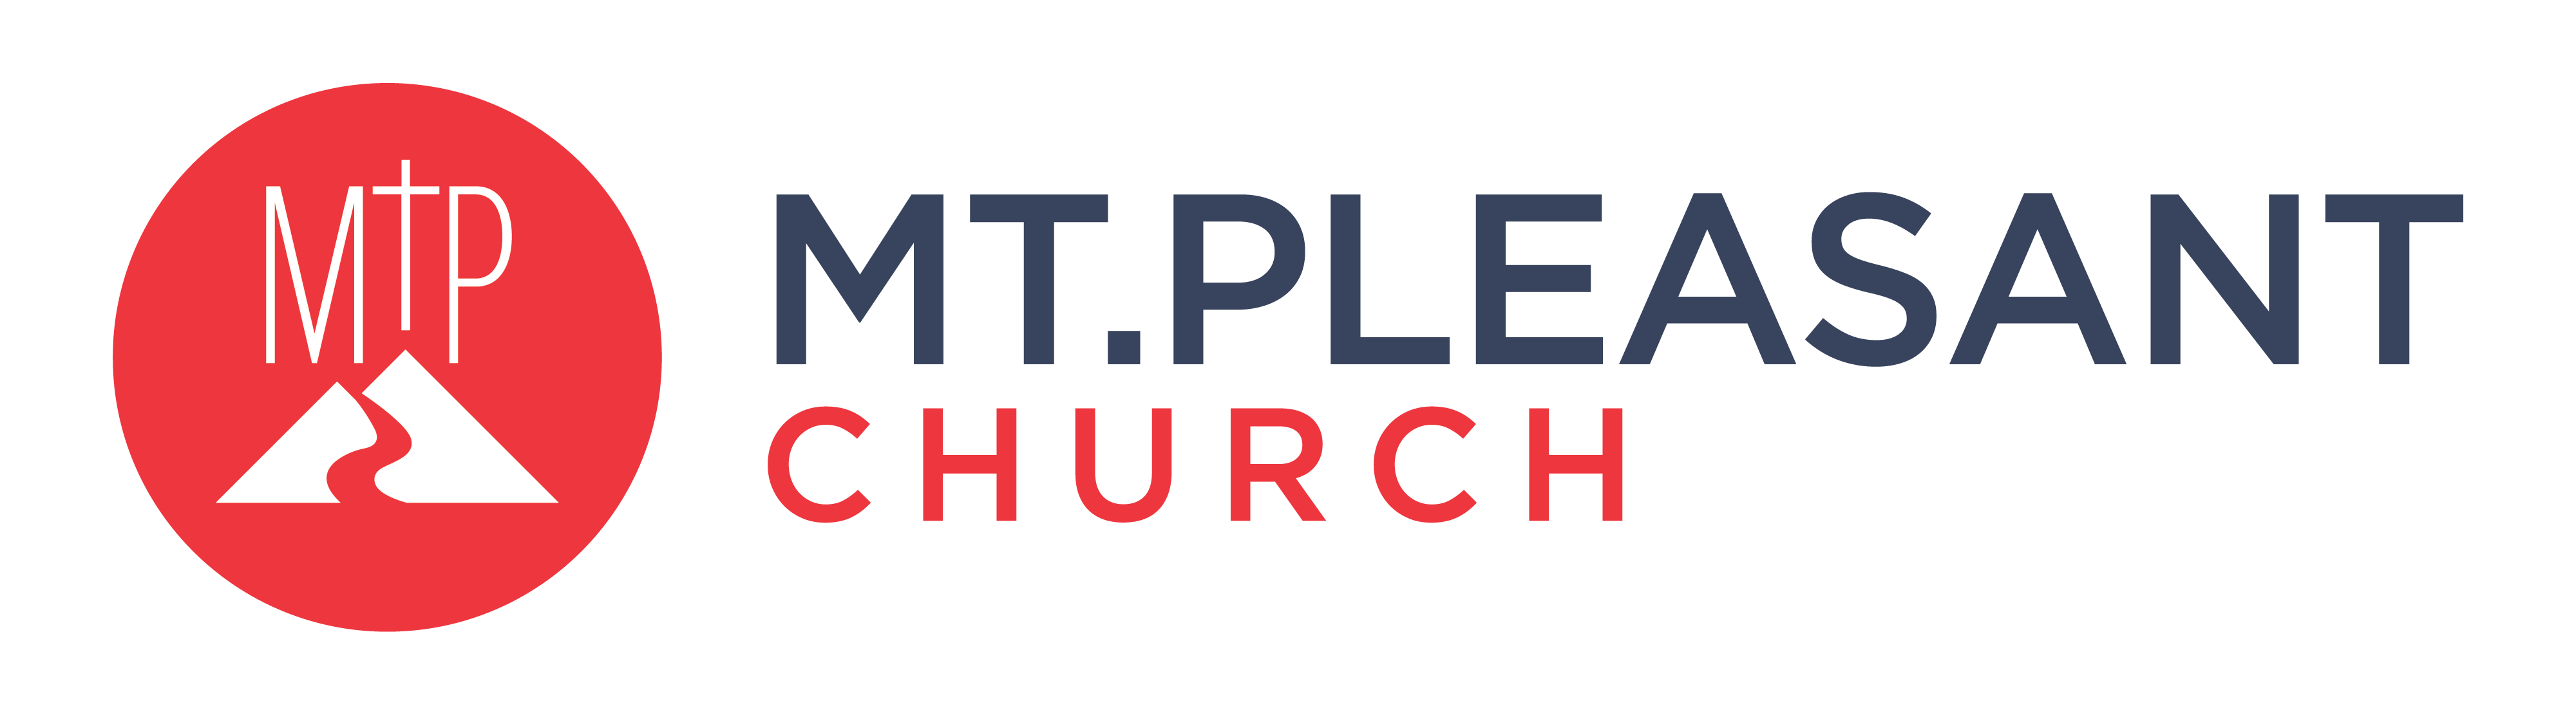 mt pleasant church logo